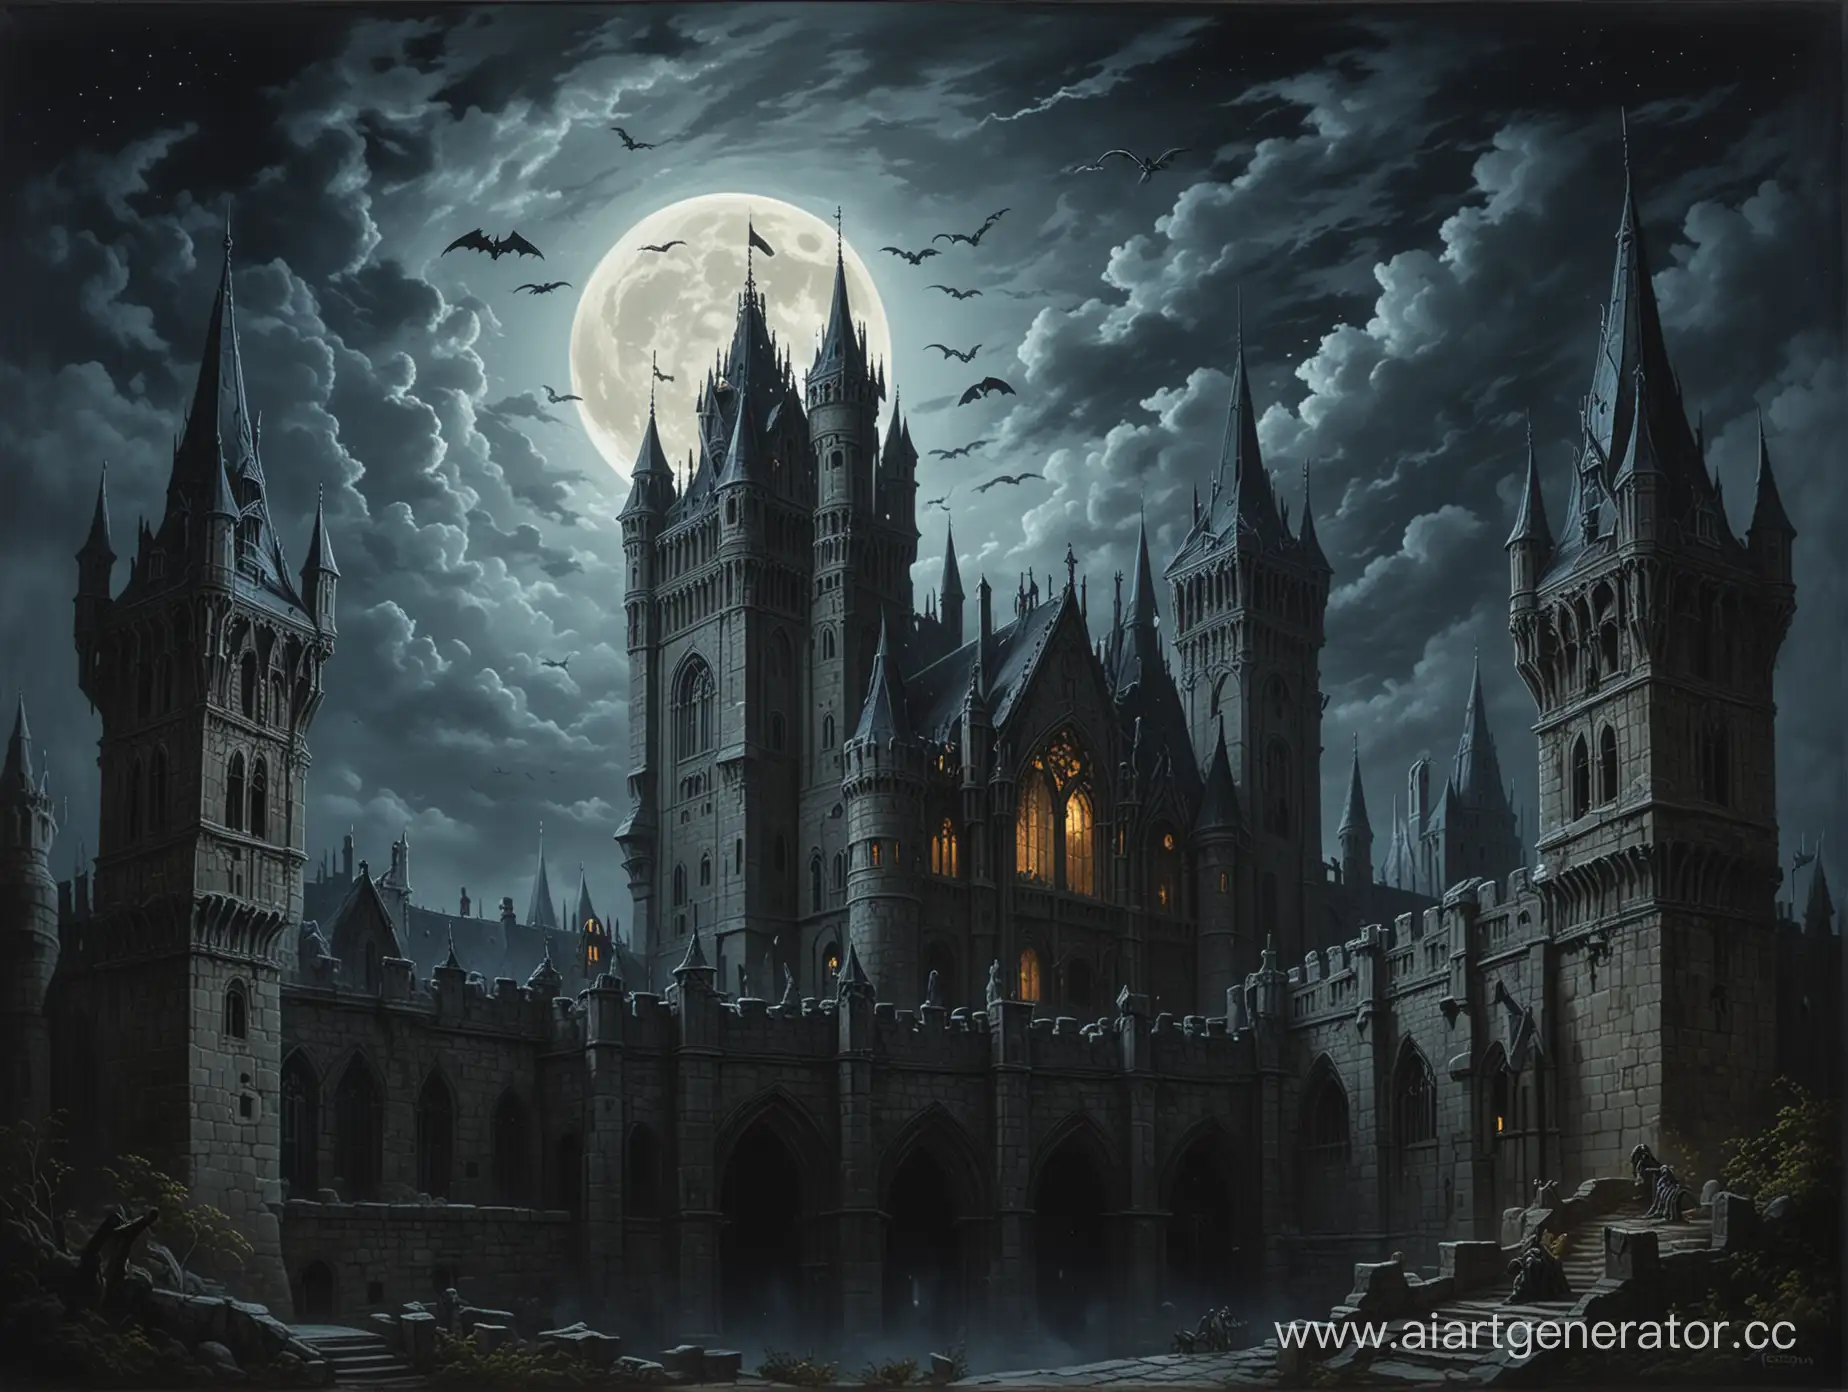 Gothic painting of an ancient castle at night, with a full moon, gargoyles, and shadows (Готическая картина старинного замка в ночное время с полной луной, горгульями и тенями).